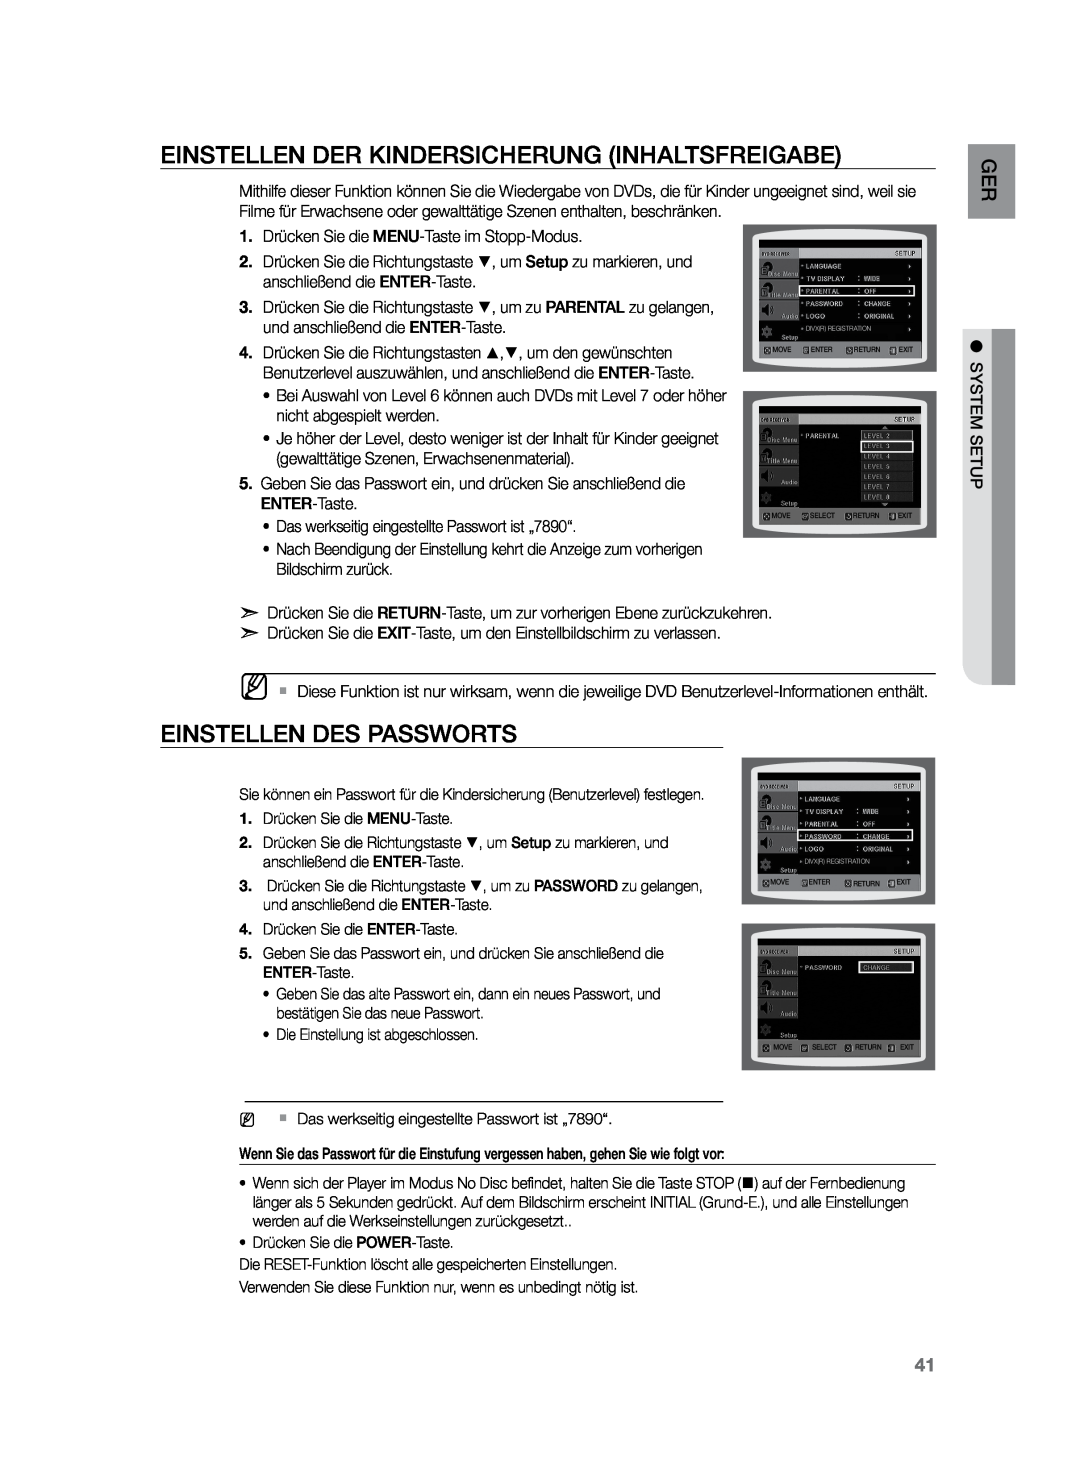 Samsung HT-Z120T/XEF, HT-Z120T/EDC manual Einstellen der Kindersicherung INHALTSFREIGABE, Einstellen des Passworts 